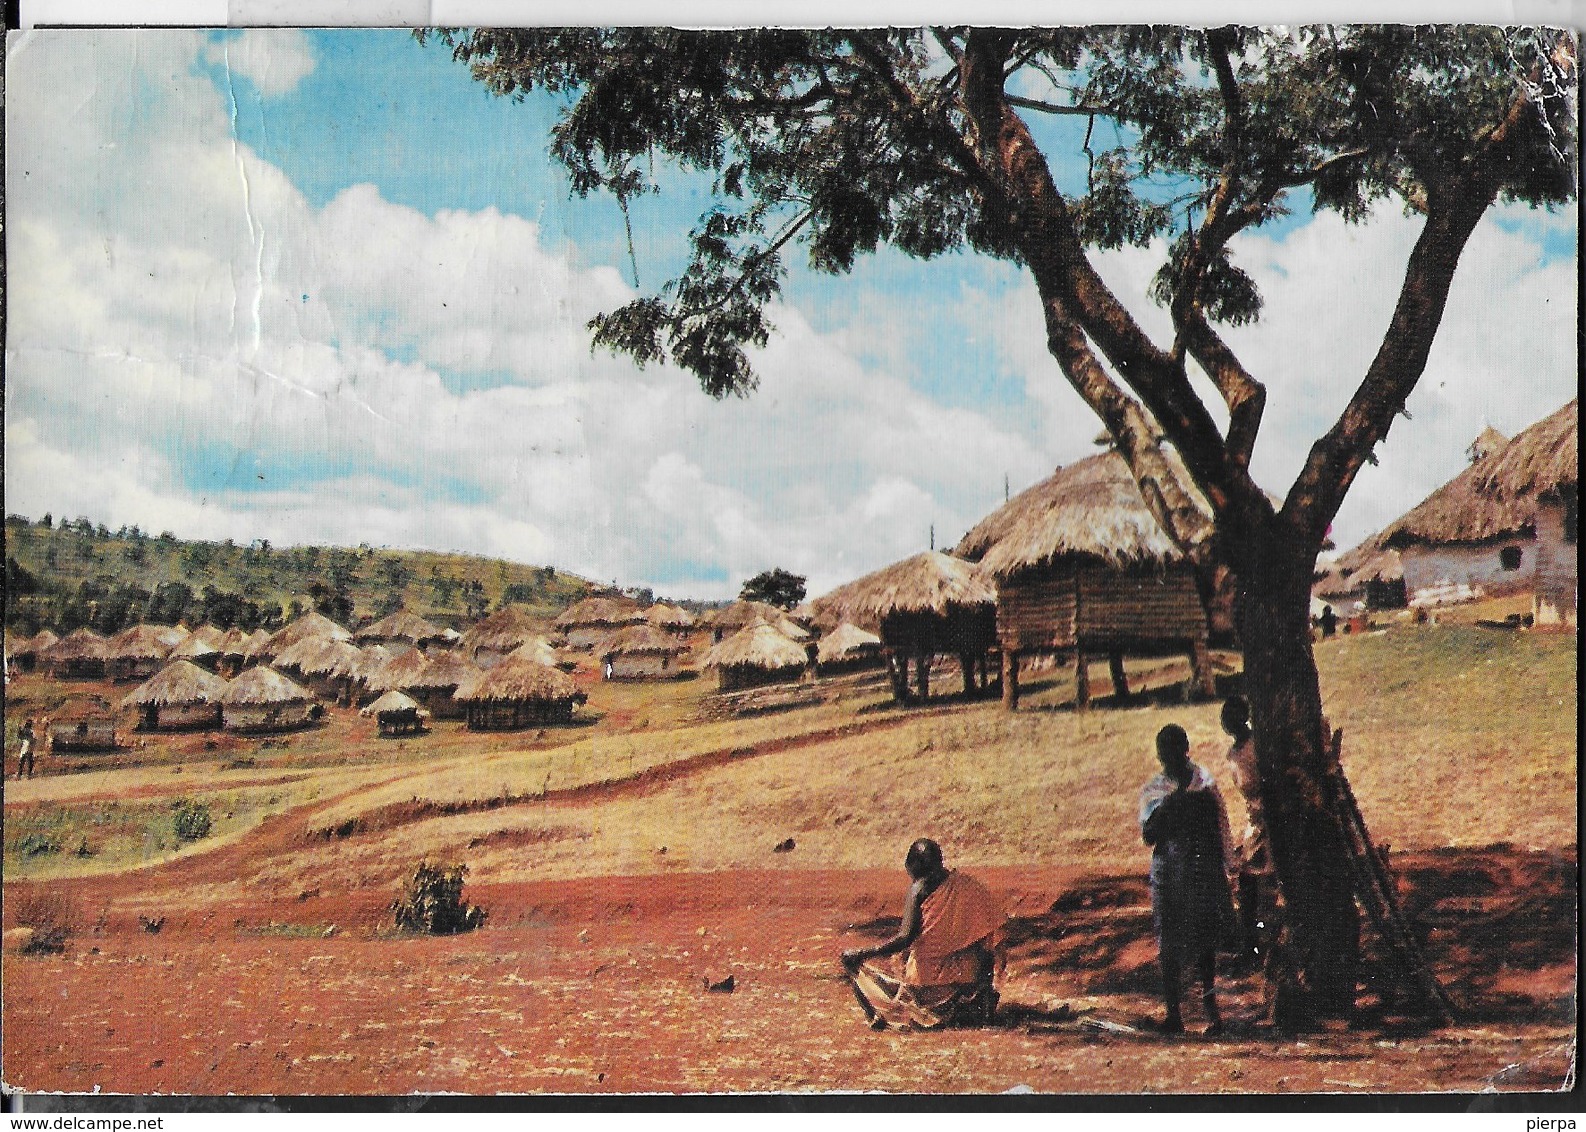 VILLAGGIO AFRICANO - VIAGGIATA 1971 FRANCOBOLLO ASPORTATO - Africa